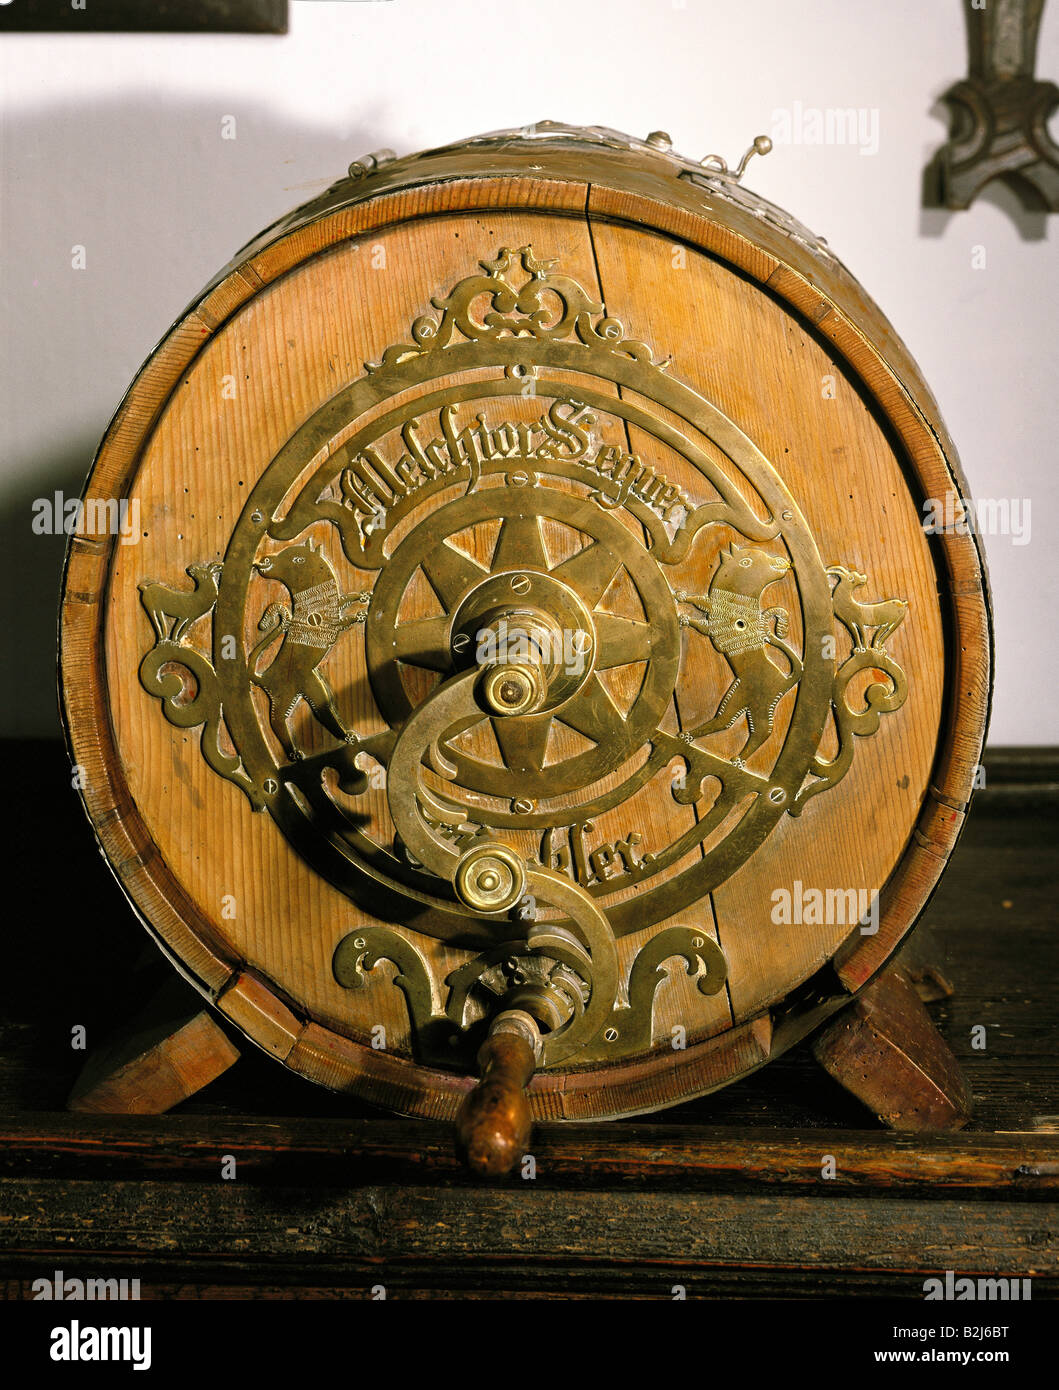 household, kitchen and kitchenware, butter churn, Melchior Segner Winkler, wood, brass, diameter: 38.5 cm , depth: 23 cm, 1854, Stock Photo